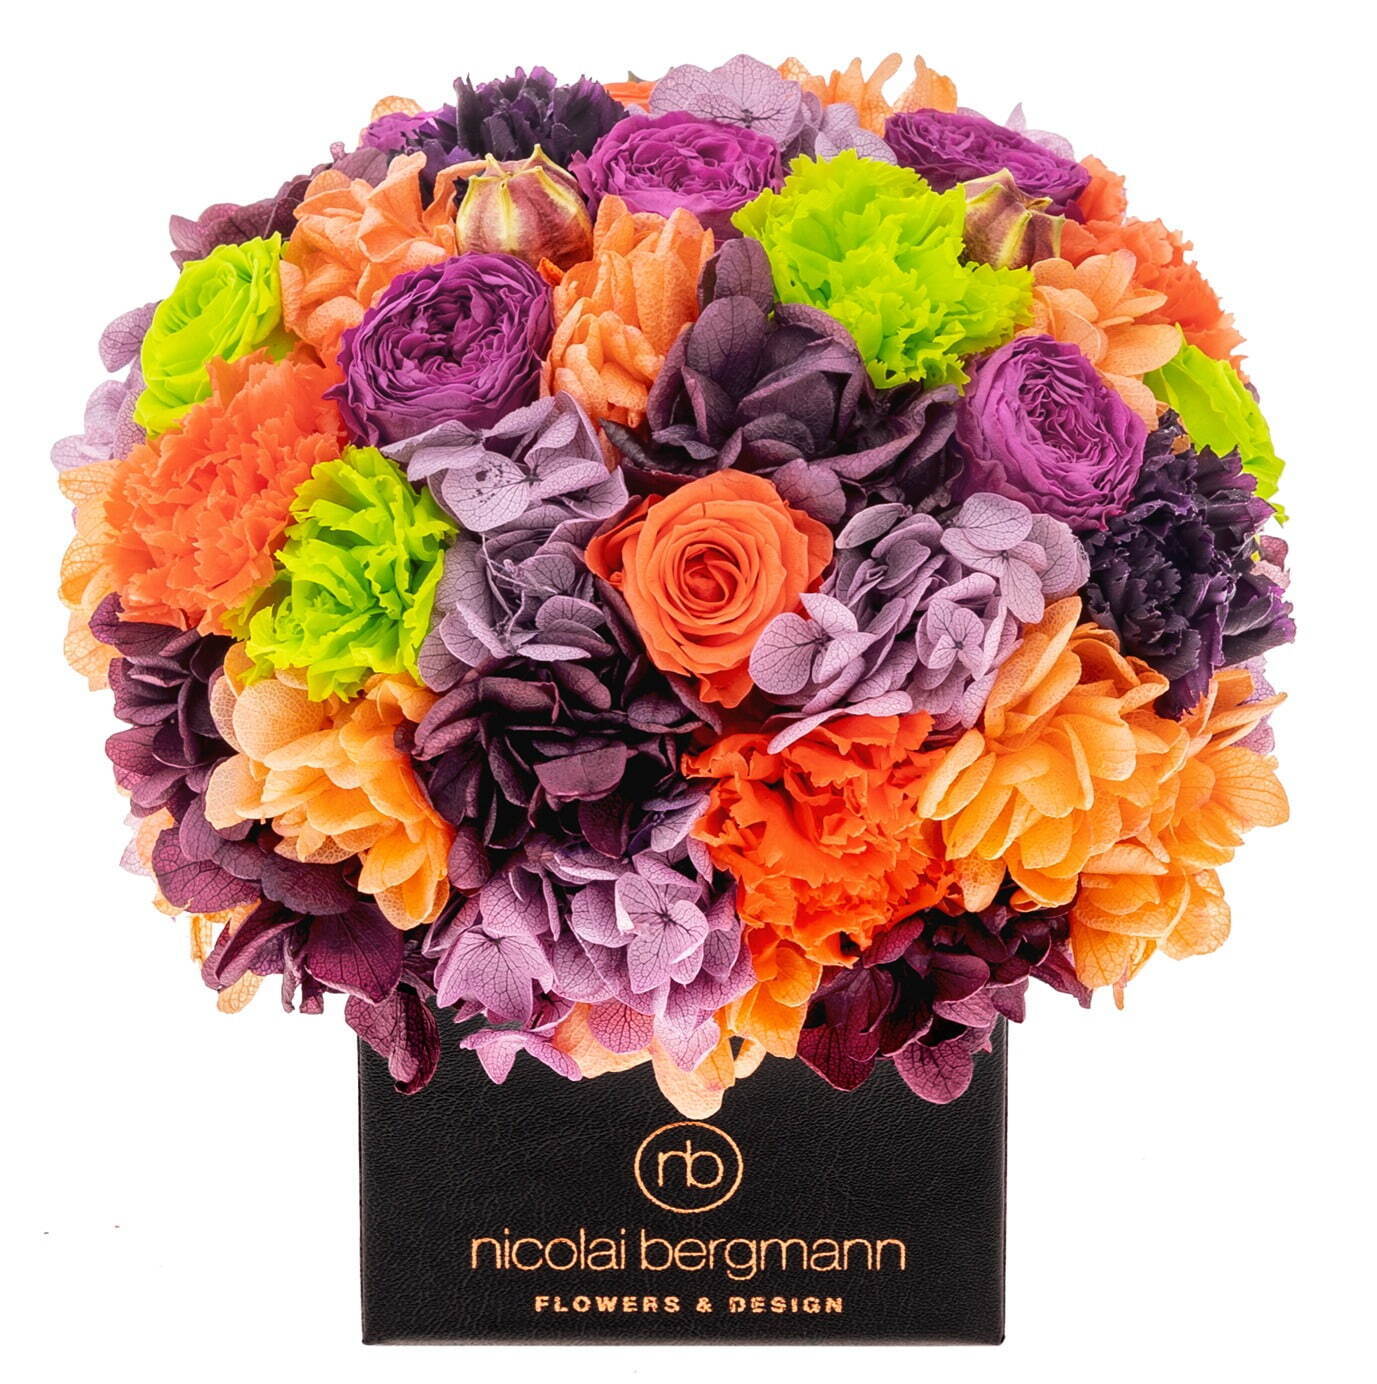 ニコライ バーグマンの秋限定フラワーボックス、鮮やかオレンジ×紫の